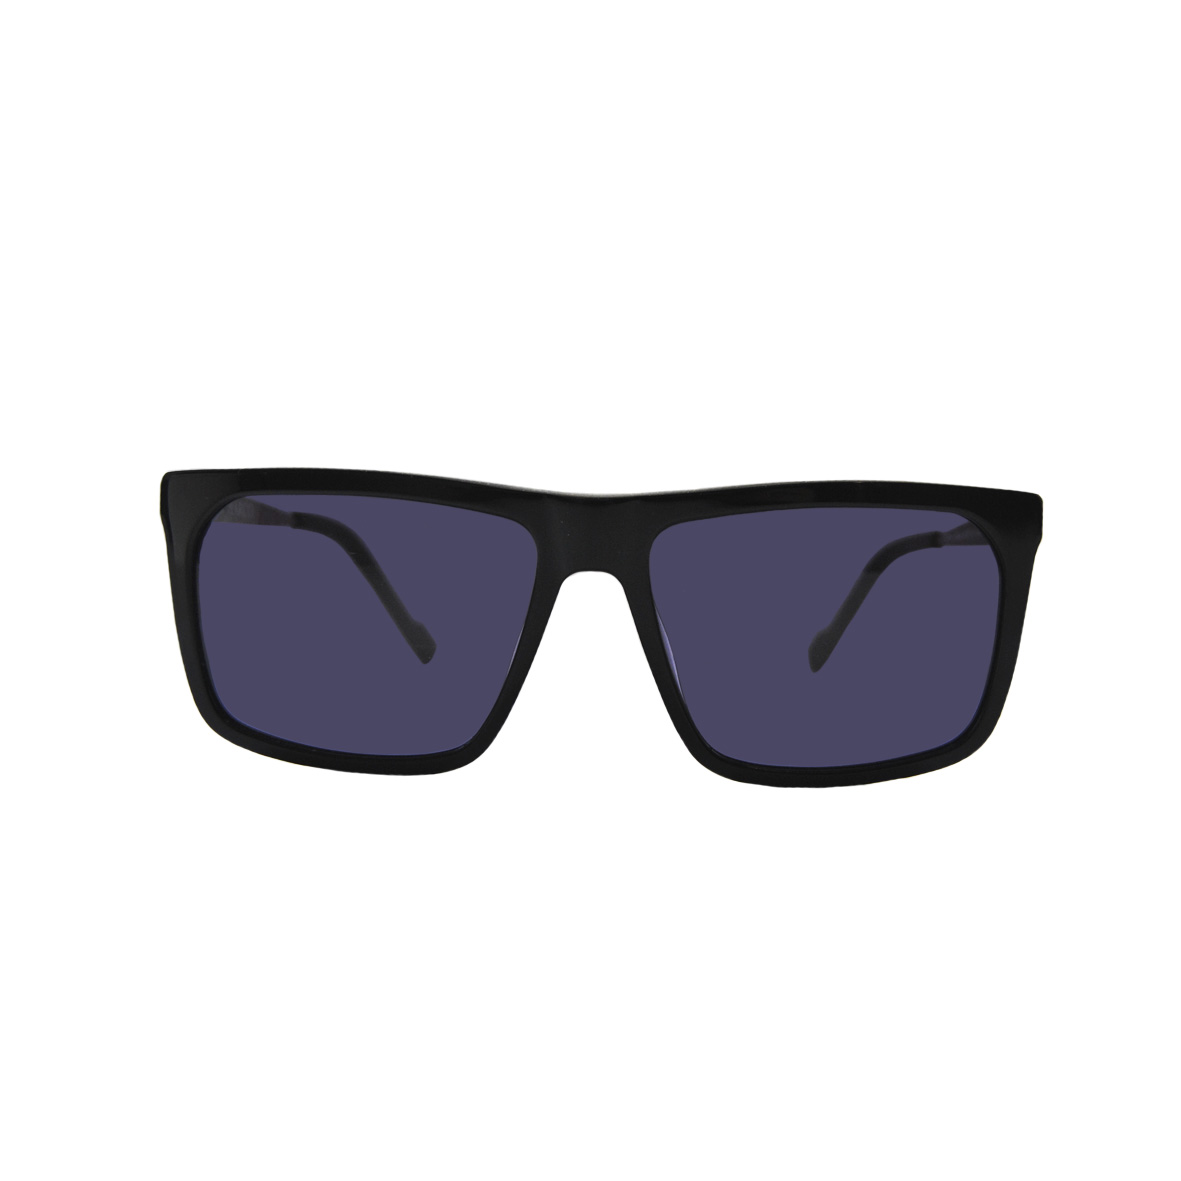 Солнцезащитные очки Enni Marco модель IS11-429 17